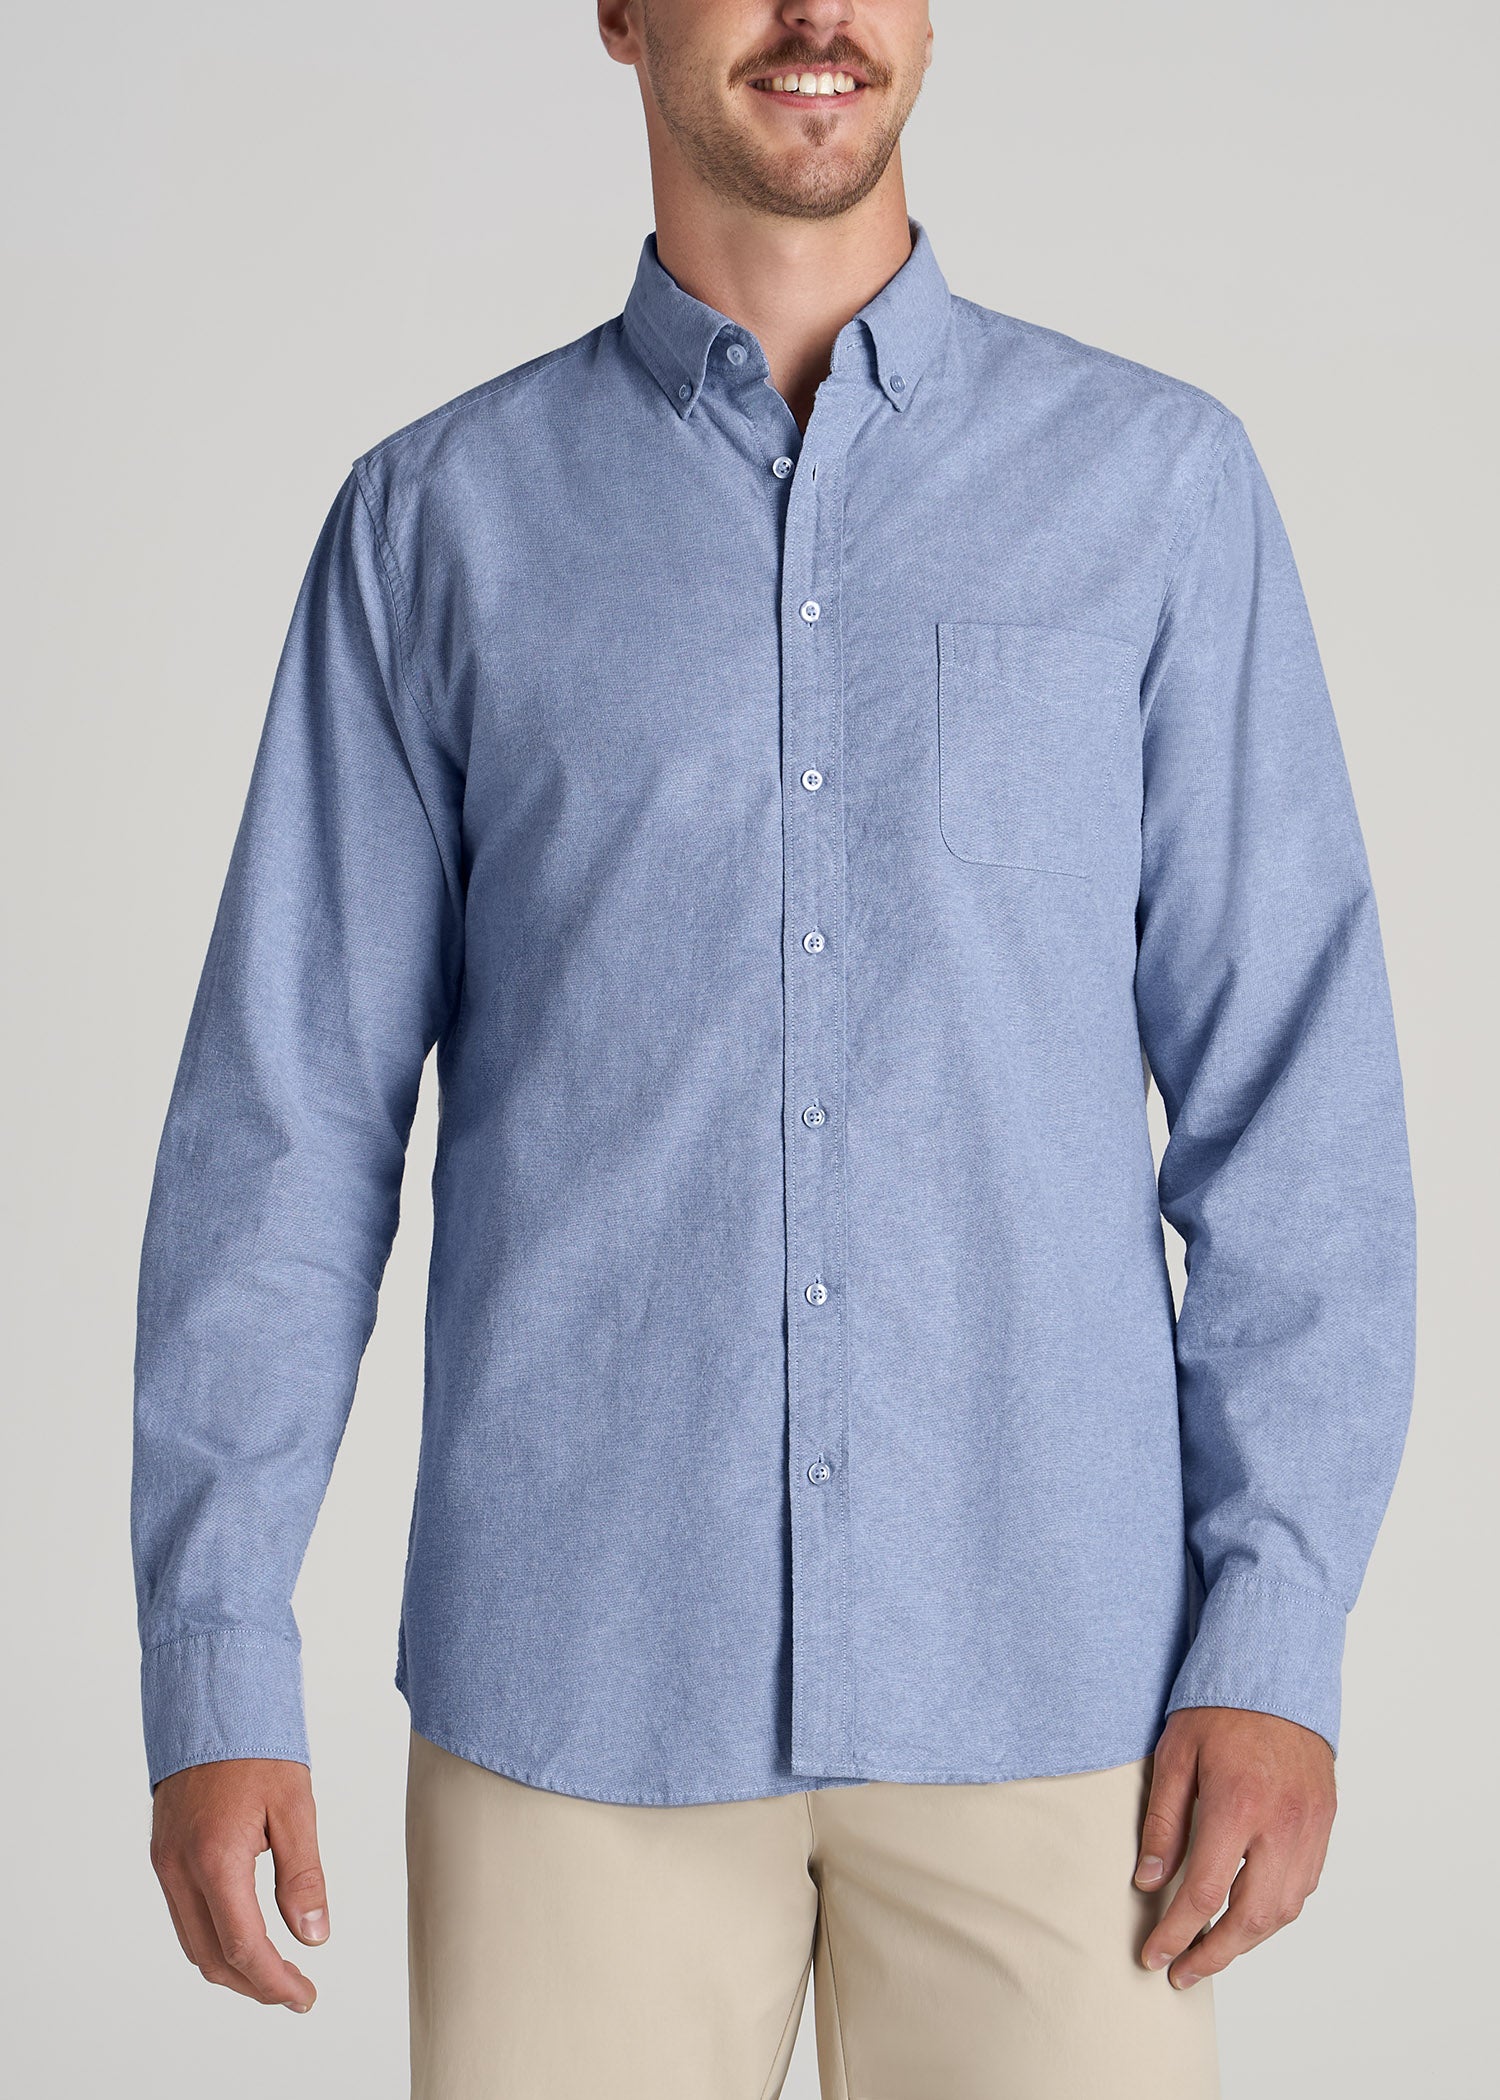 Essentials Men's Regular-Fit Long-Sleeve Oxford Shirt, Blue